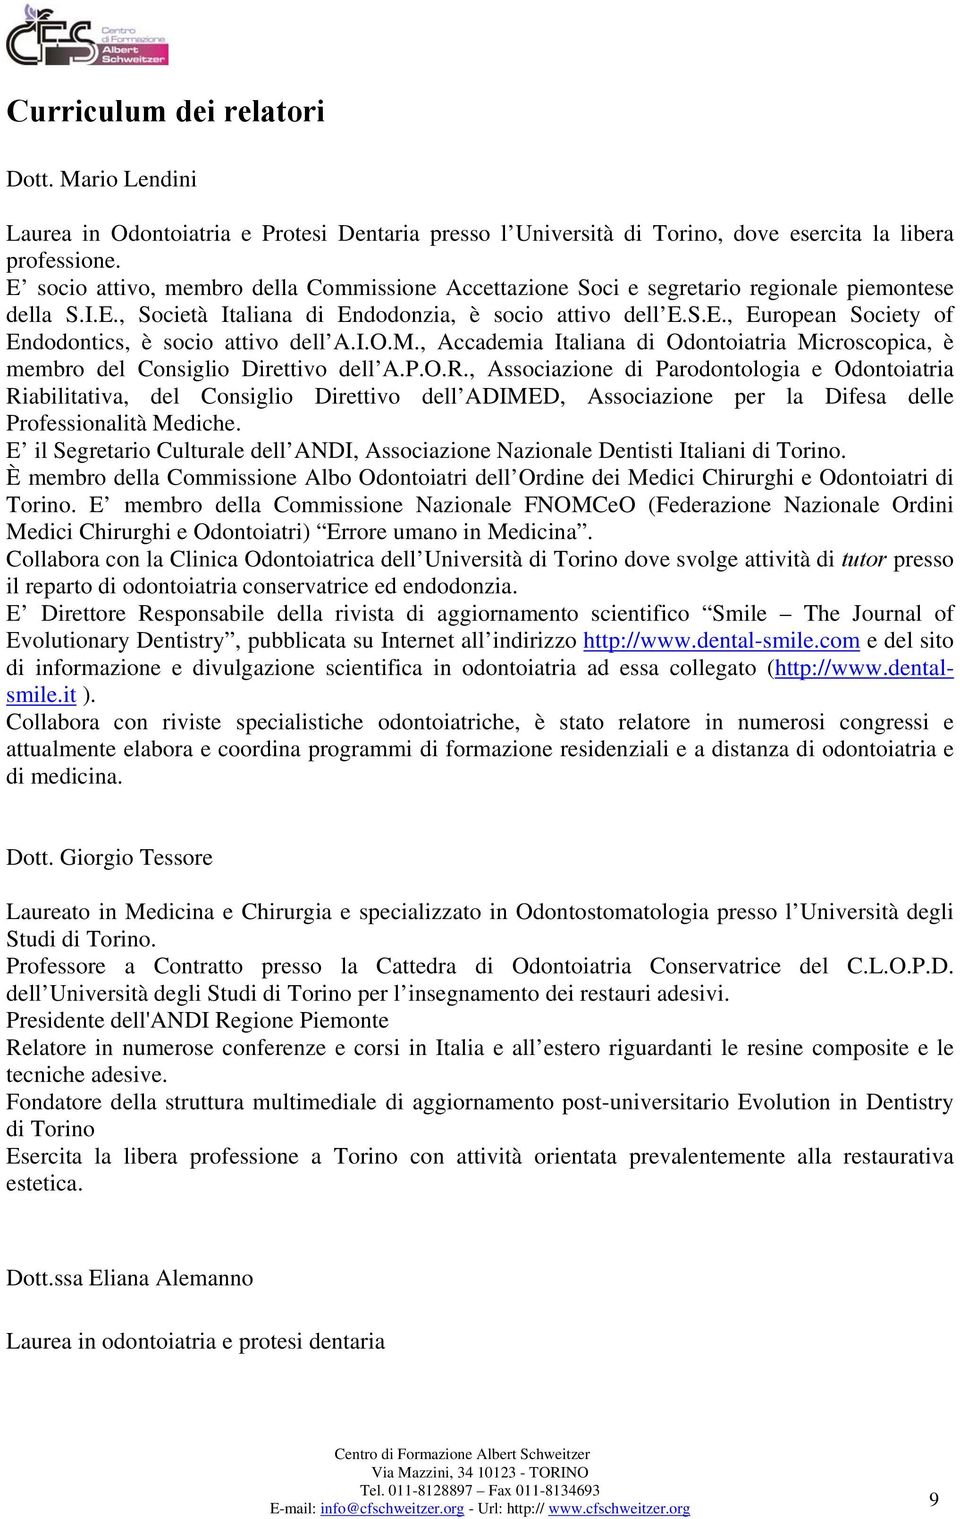 I.O.M., Accademia Italiana di Odontoiatria Microscopica, è membro del Consiglio Direttivo dell A.P.O.R.